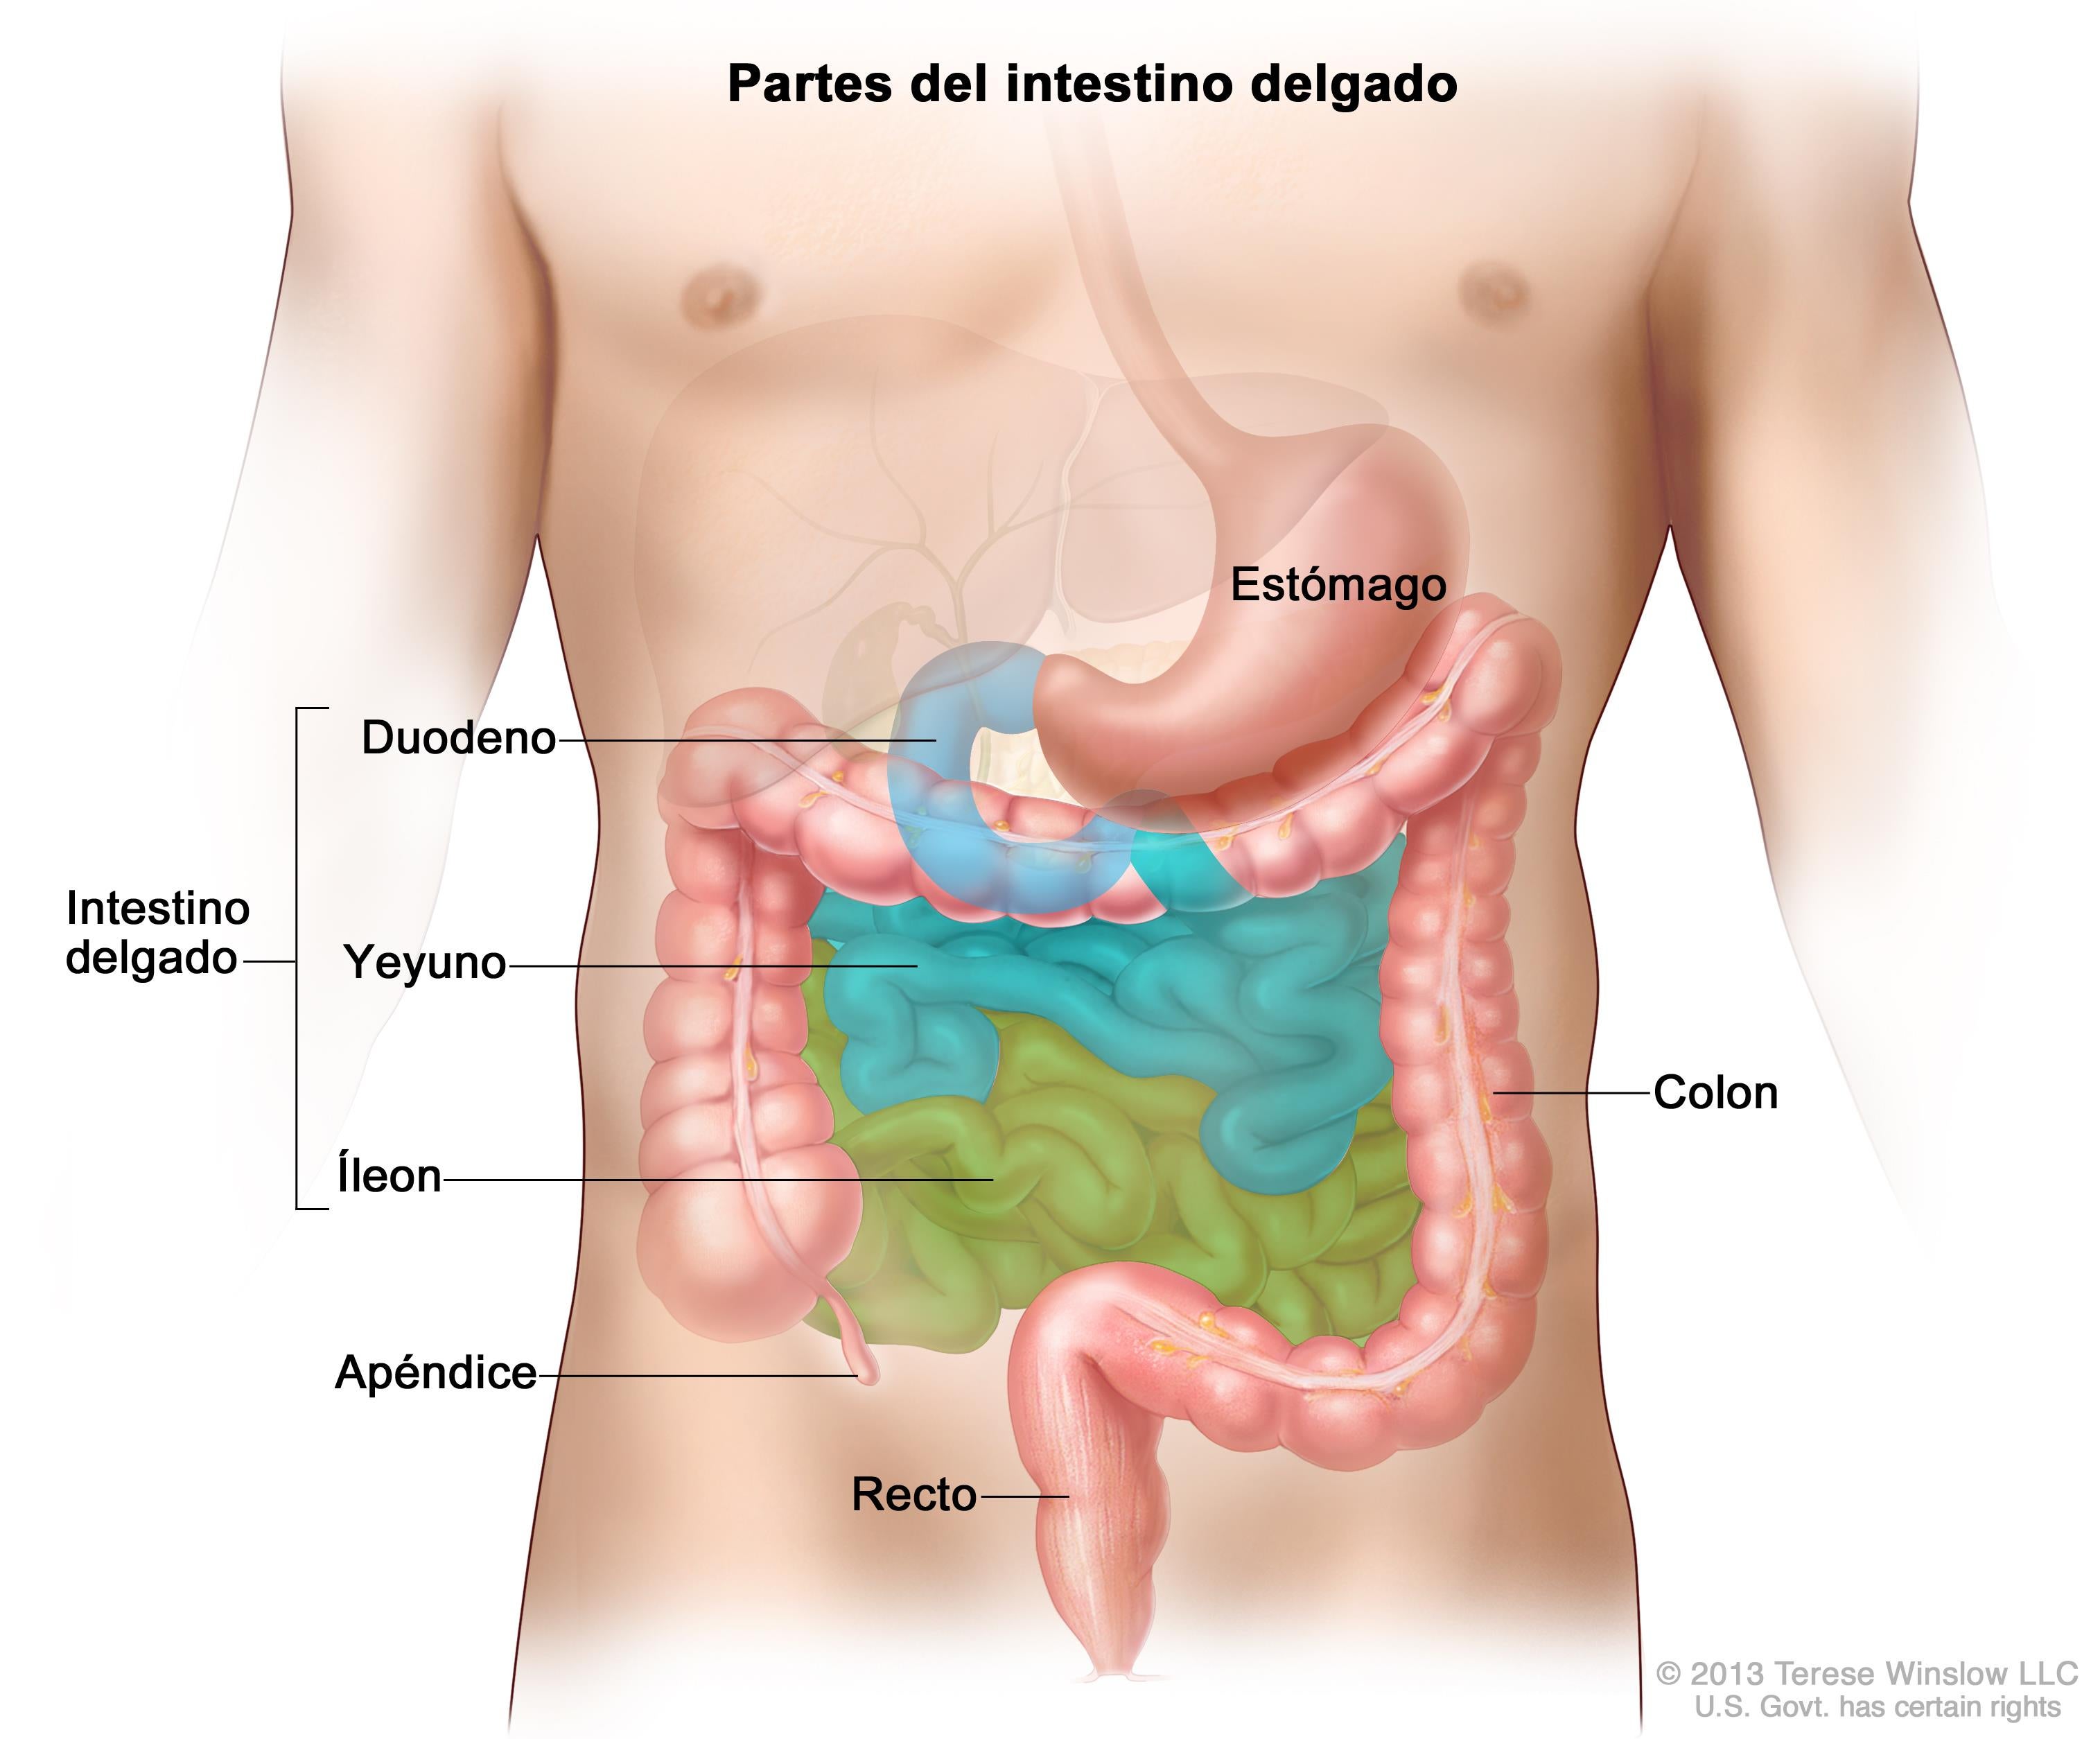 Partes-del-intestino-delgado